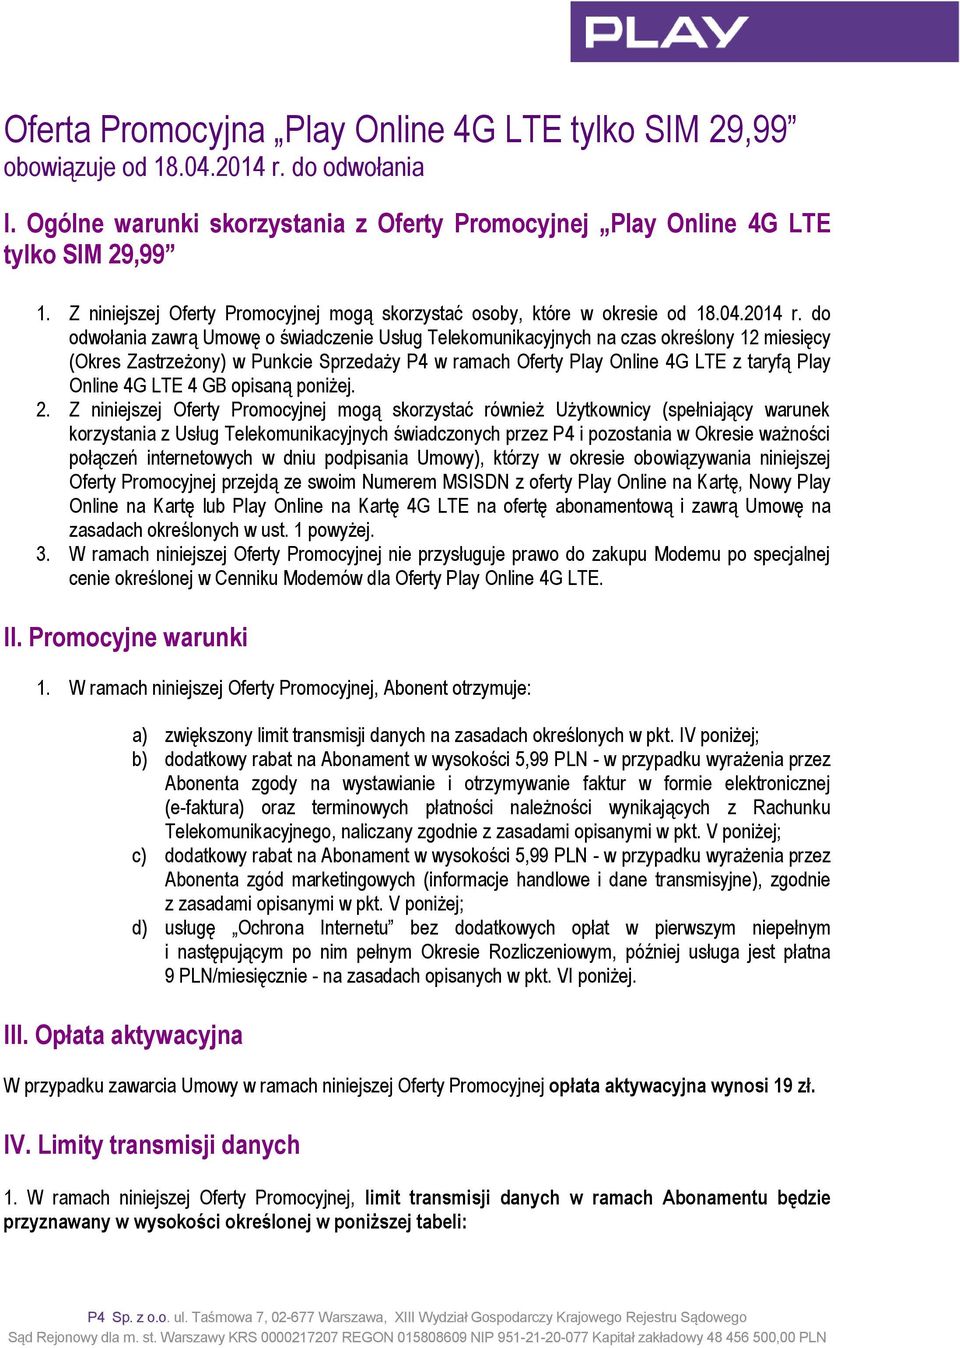 do odwołania zawrą Umowę o świadczenie Usług Telekomunikacyjnych na czas określony 12 miesięcy (Okres Zastrzeżony) w Punkcie Sprzedaży P4 w ramach Oferty Play Online 4G LTE z taryfą Play Online 4G